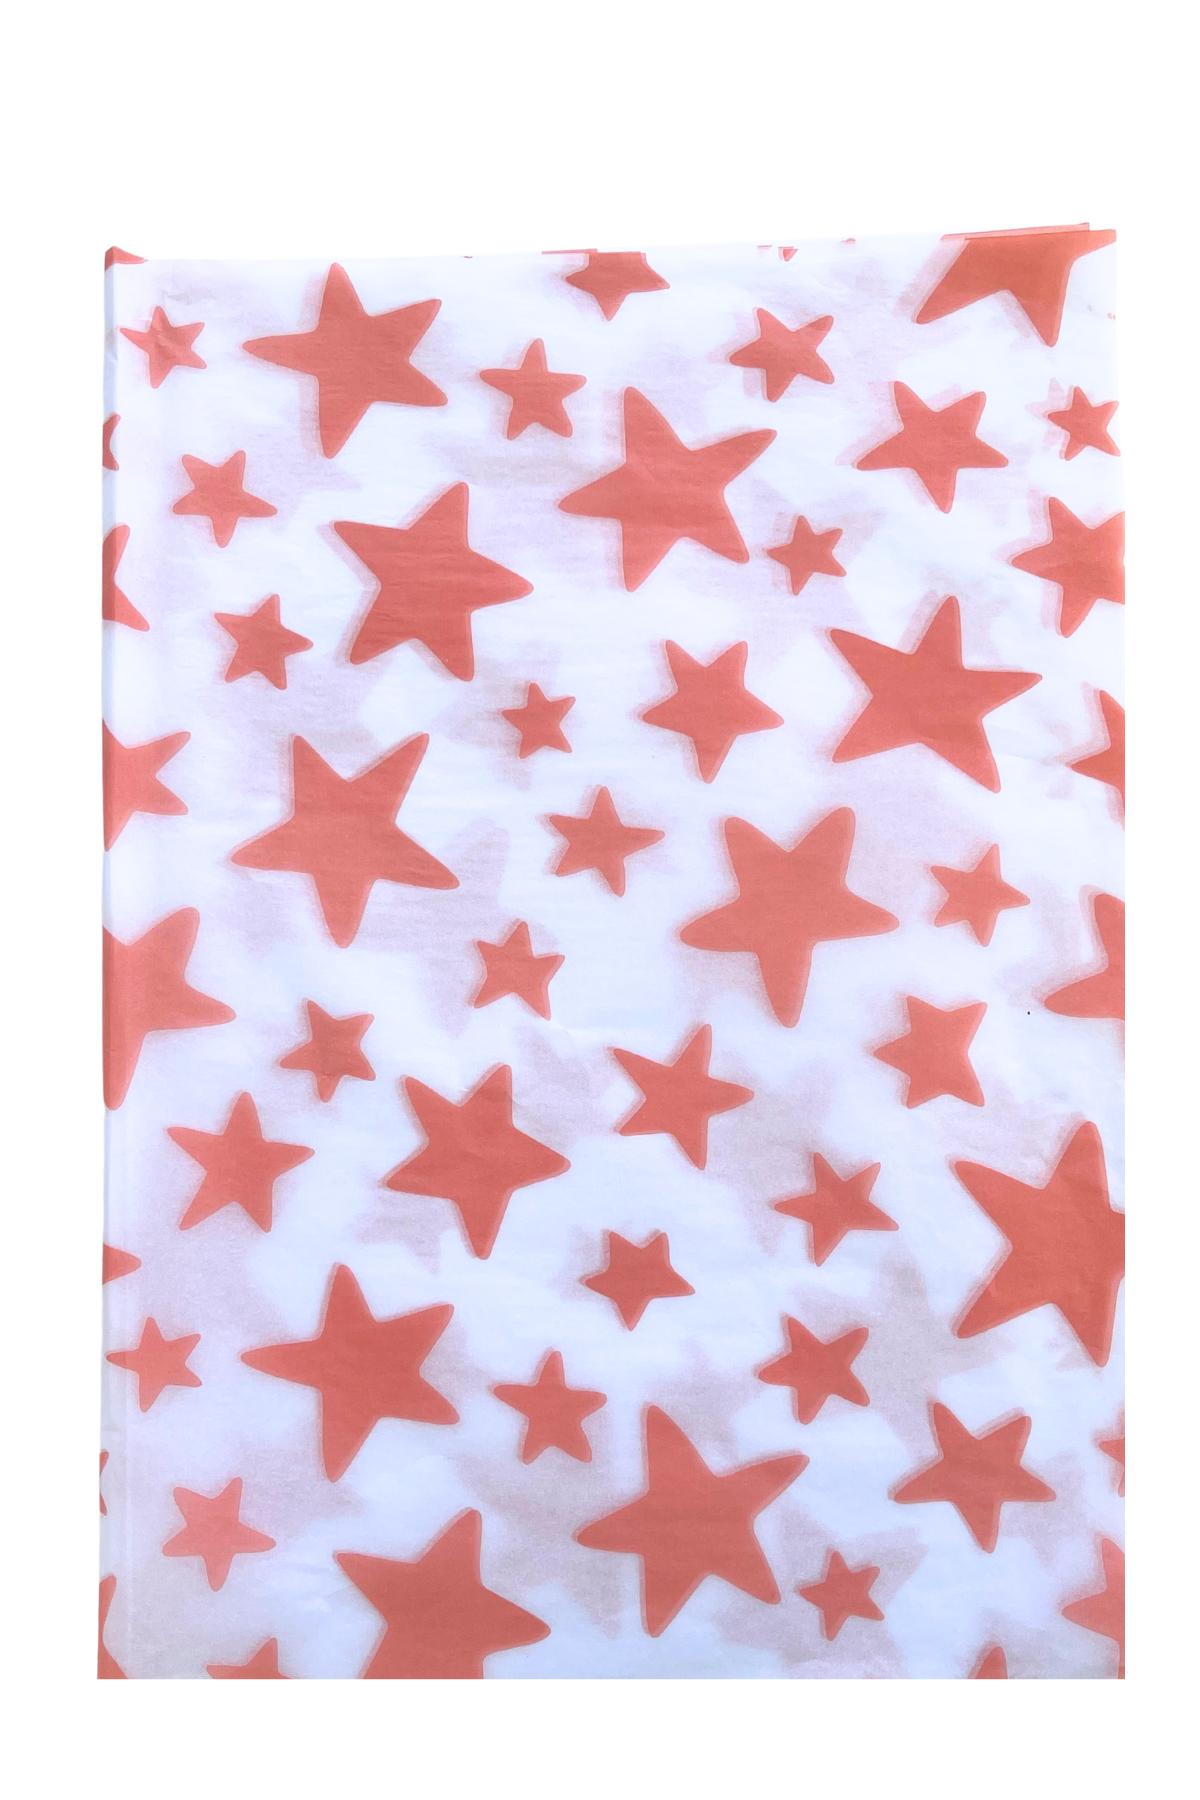 Pink Star Tissue Paper